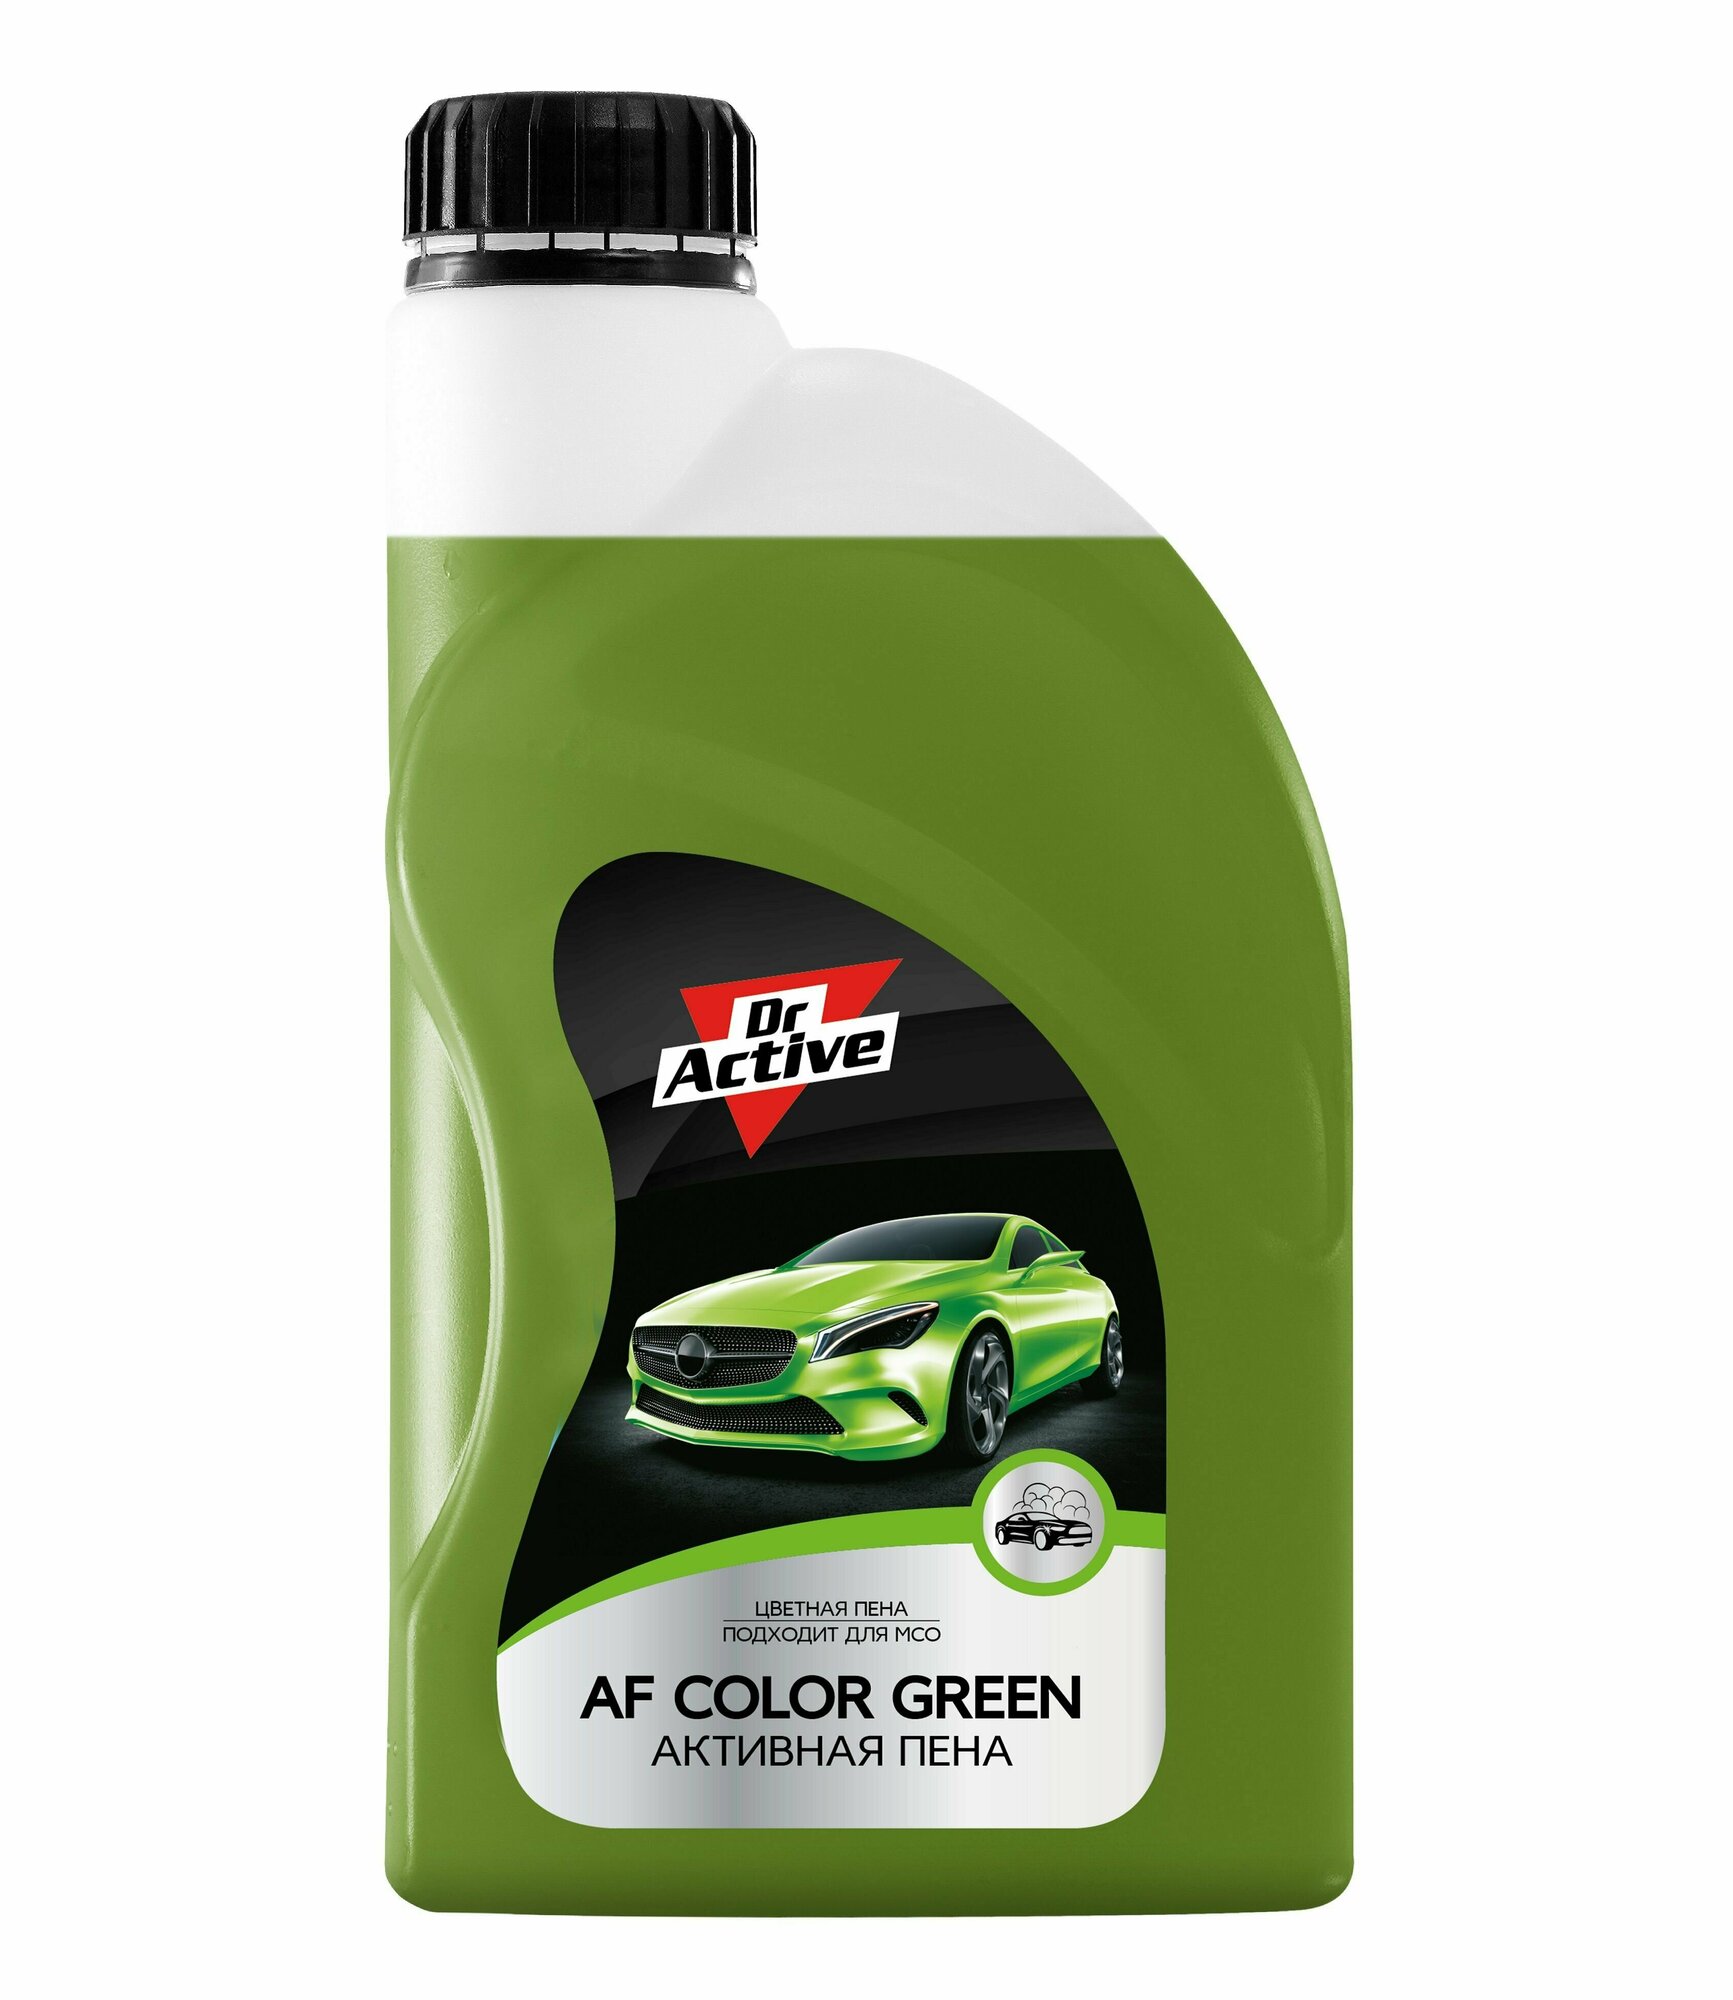 Автошампунь для бесконтактной мойки автомобиля Dr. Active "AF Color Green" концентрат 1 л, активная пена